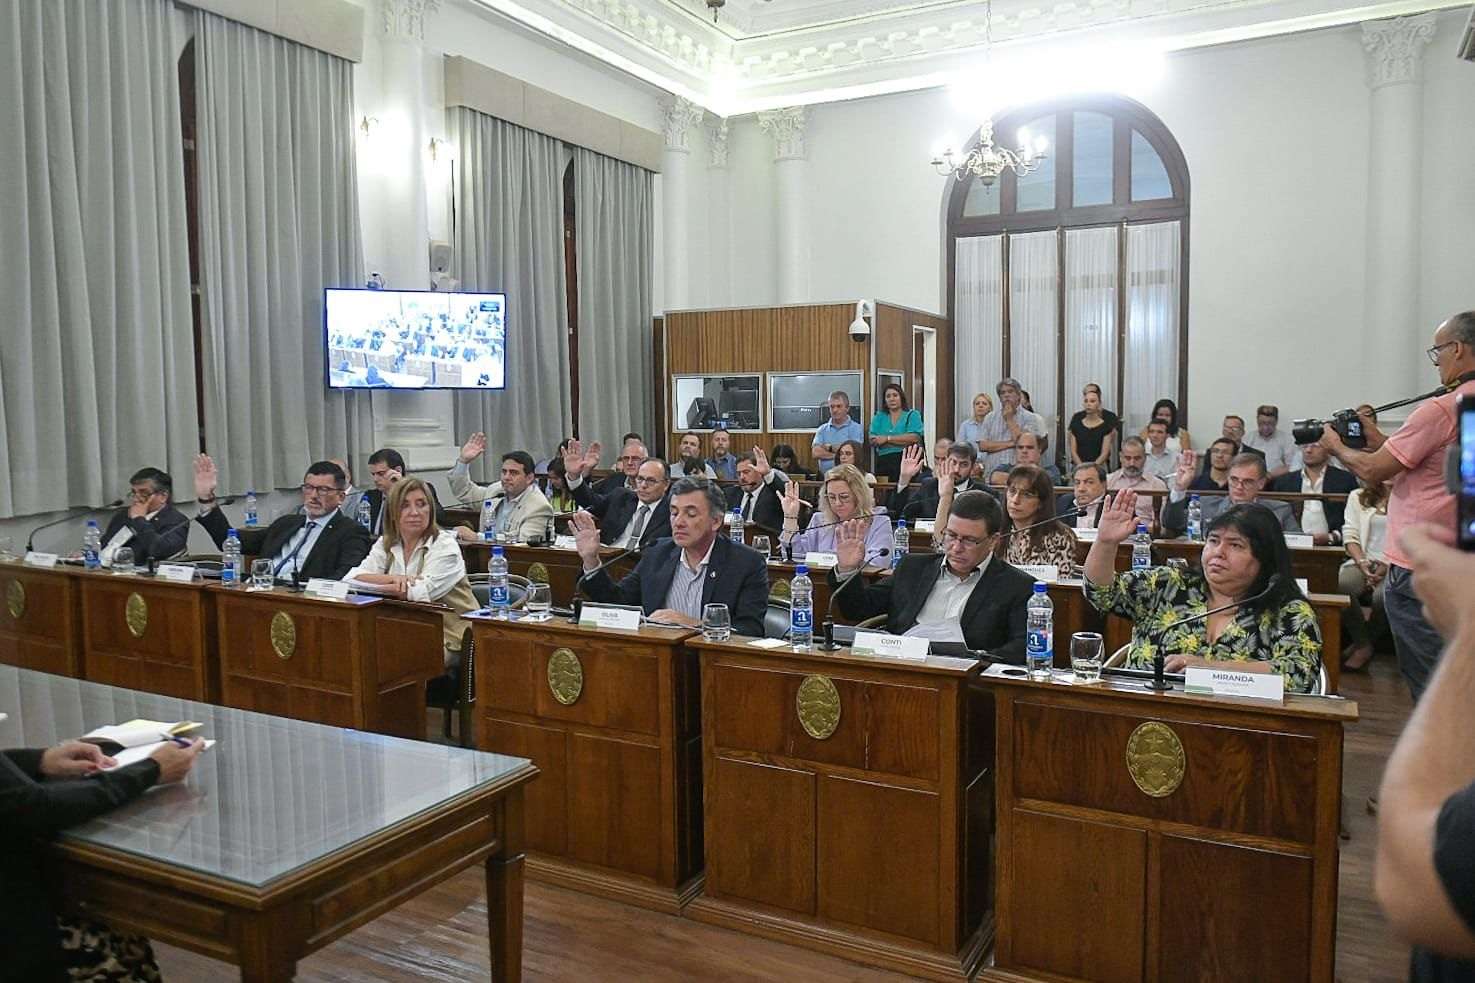 Senadores del PJ impulsan una reducción de la factura de luz para las universidades públicas de Entre Ríos